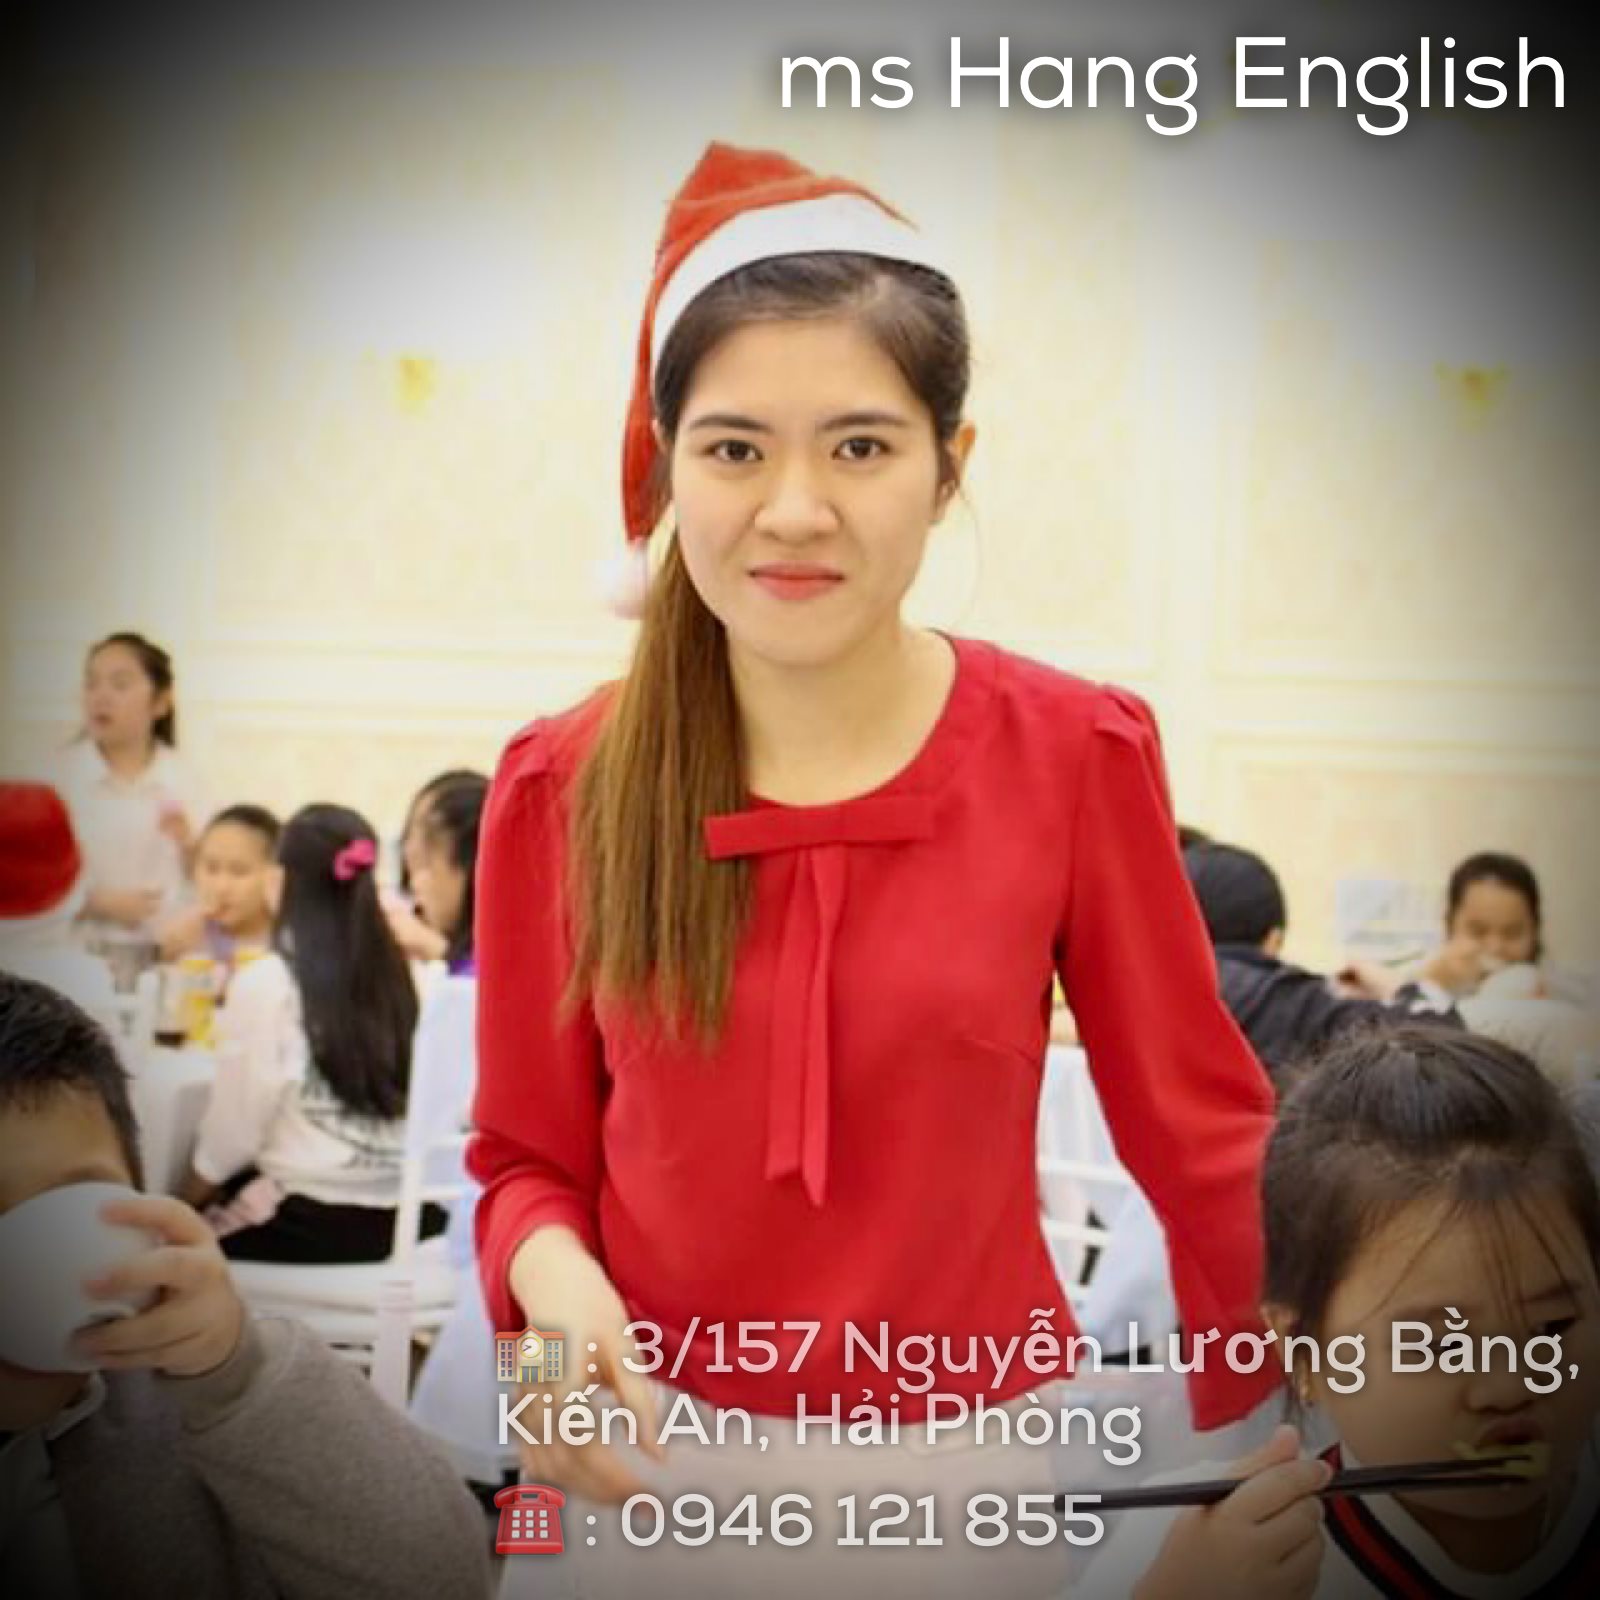 Trung tâm Ms Hang English